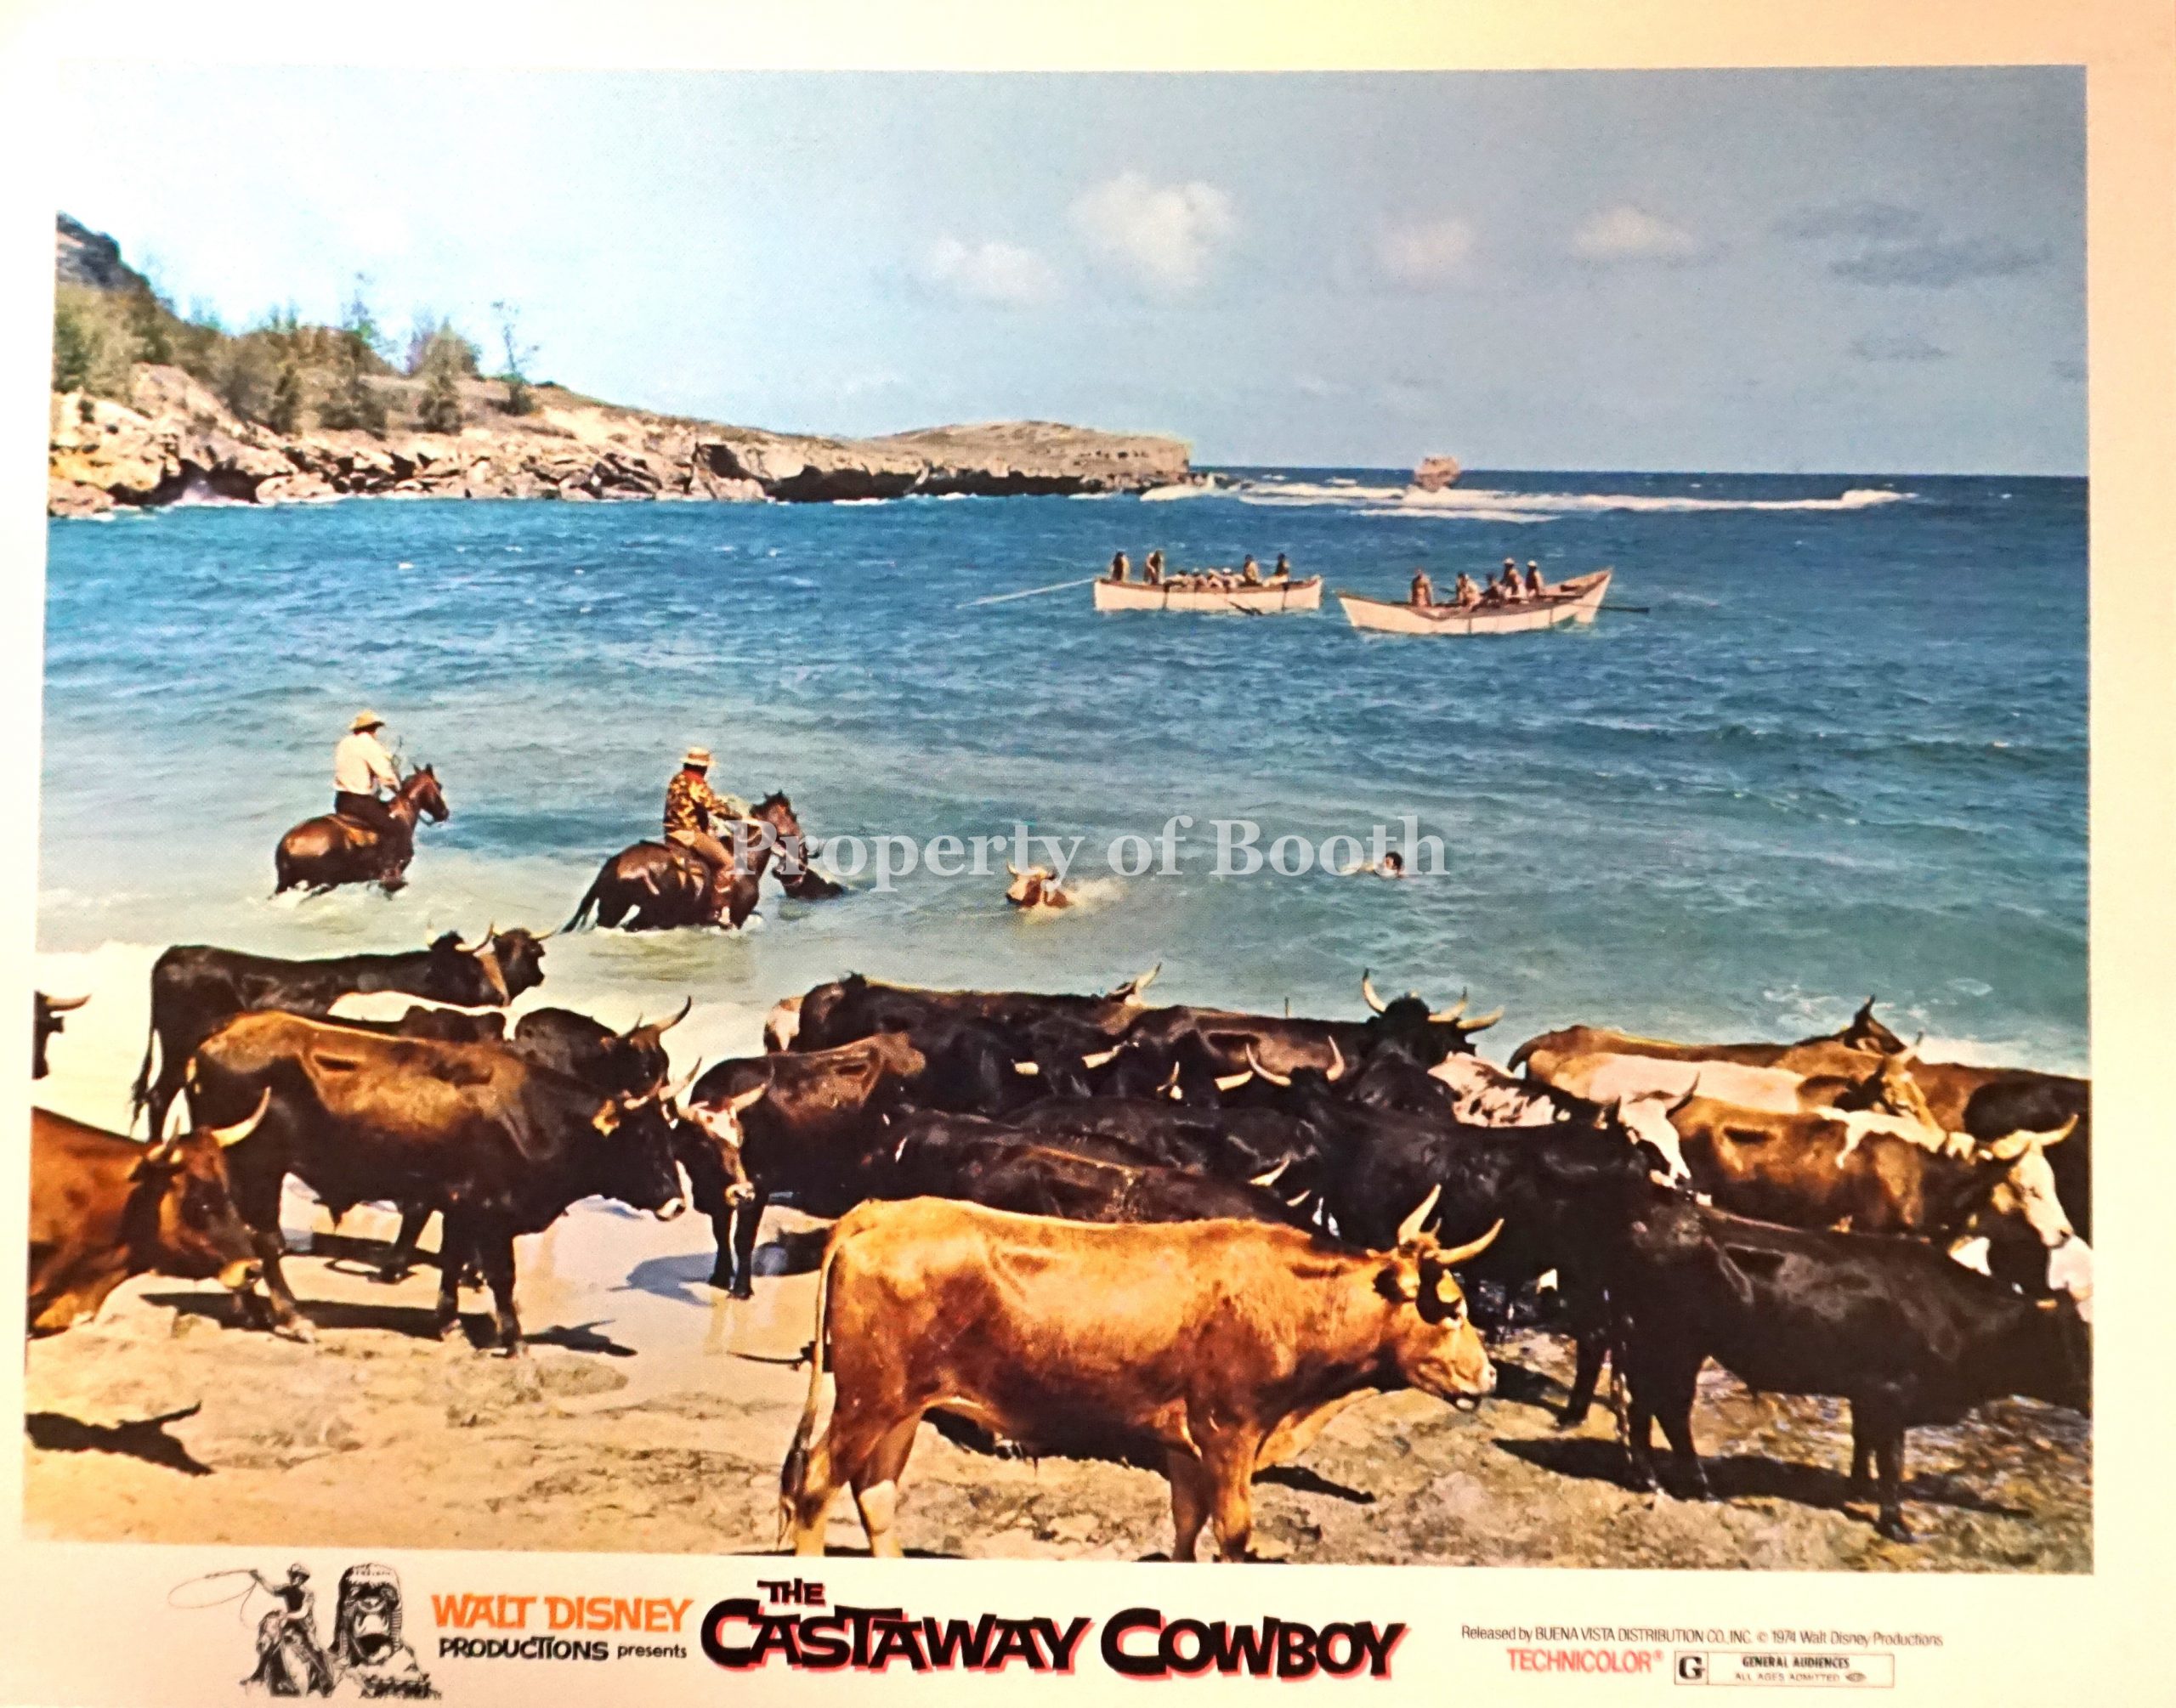 1974, The Castaway Cowboy, 11 x 14"